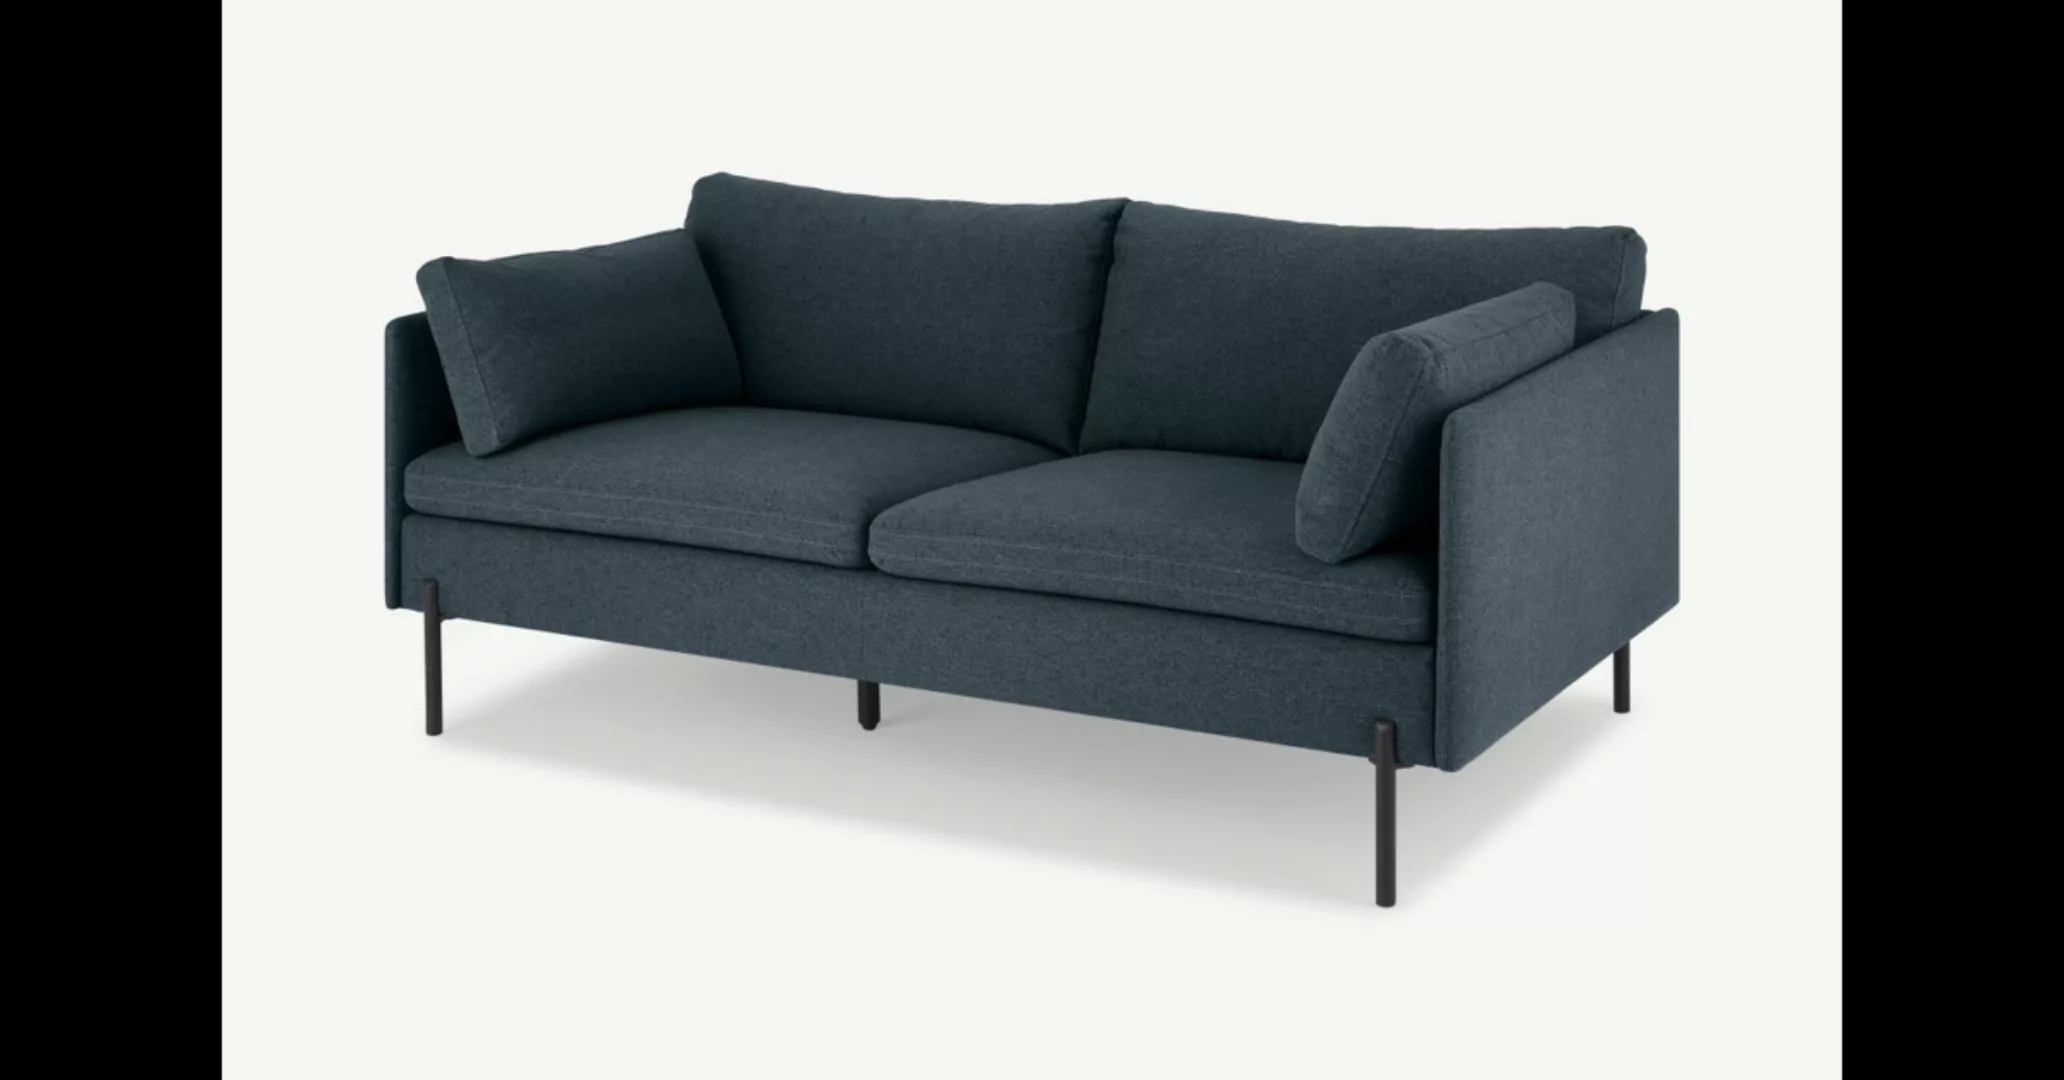 Zarina grosses 2-Sitzer Sofa, Aegaeisblau und Schwarz - MADE.com günstig online kaufen